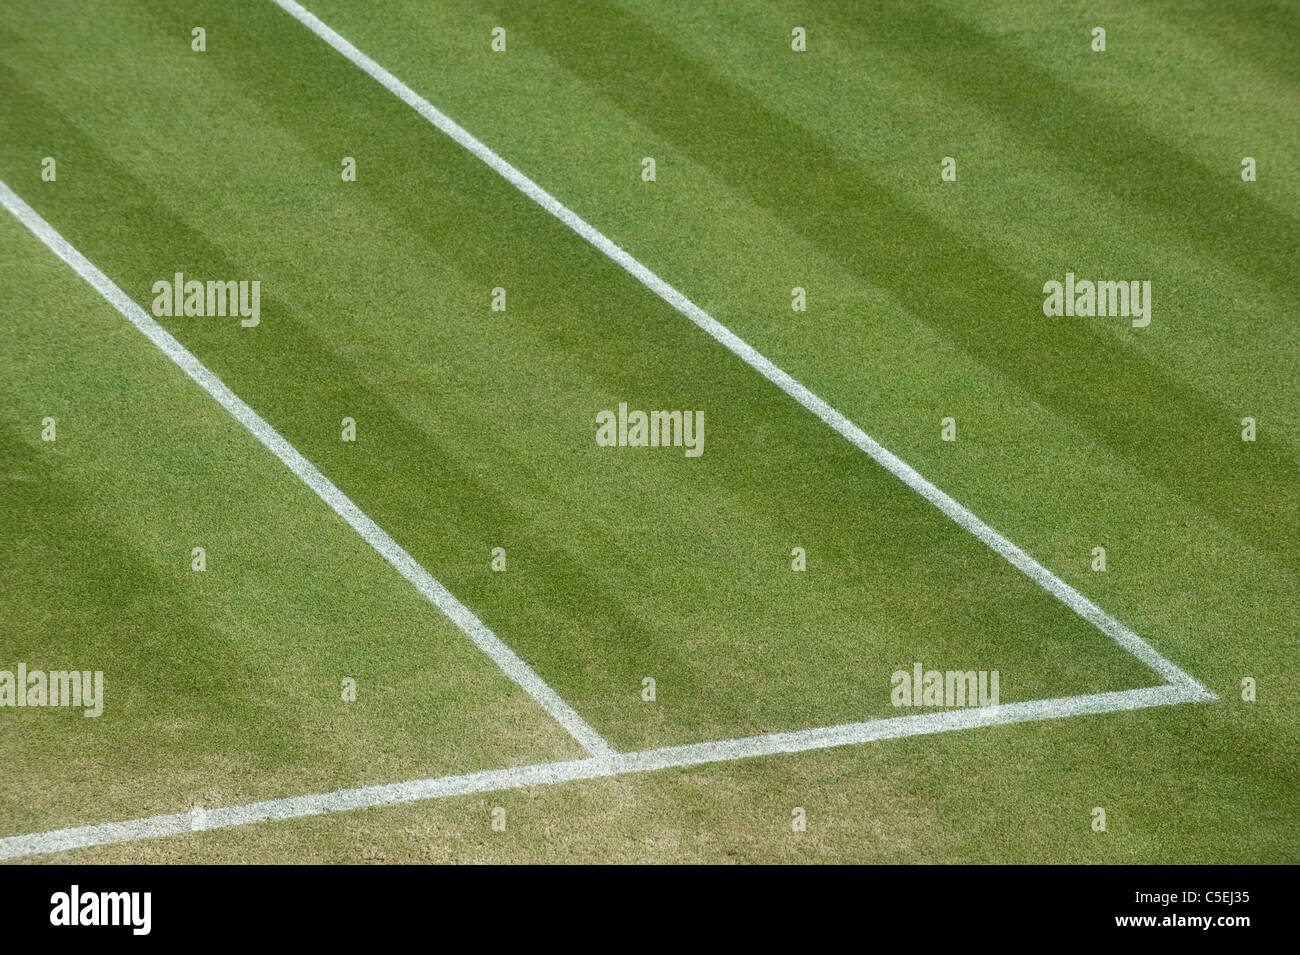 Detalle de la hierba y líneas en una fuera del tribunal durante el 2011 Campeonatos de Tenis de Wimbledon Foto de stock